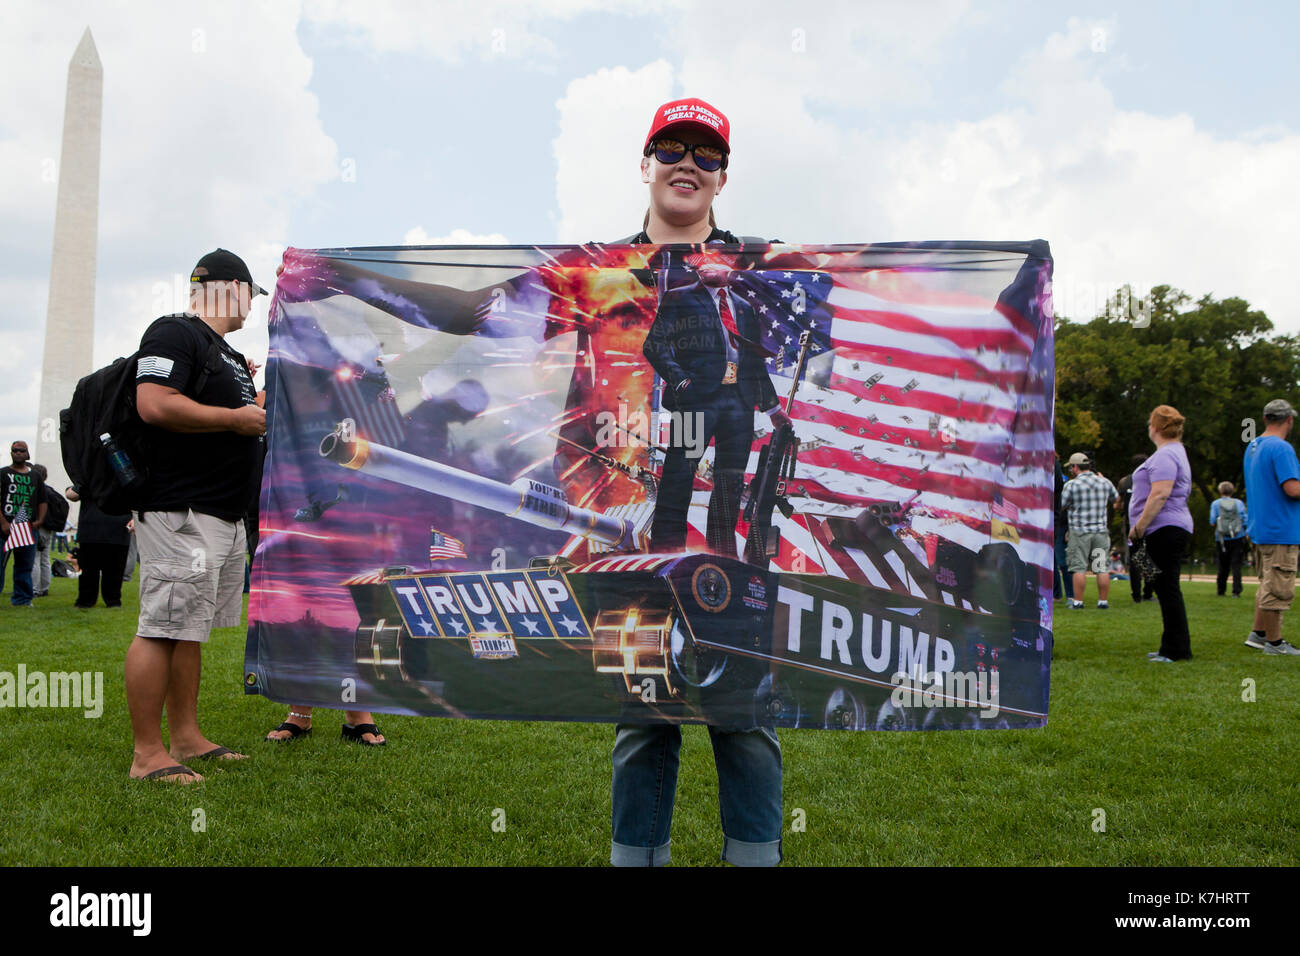 Samstag, September 16th, 2017, Washington, DC, USA: Donald Trump Unterstützer auf der National Mall einfinden, um die Botschaft an den Kongress senden, die Medien und die Welt, dass Sie United der amerikanischen Kultur und Werte zu verteidigen. Stockfoto